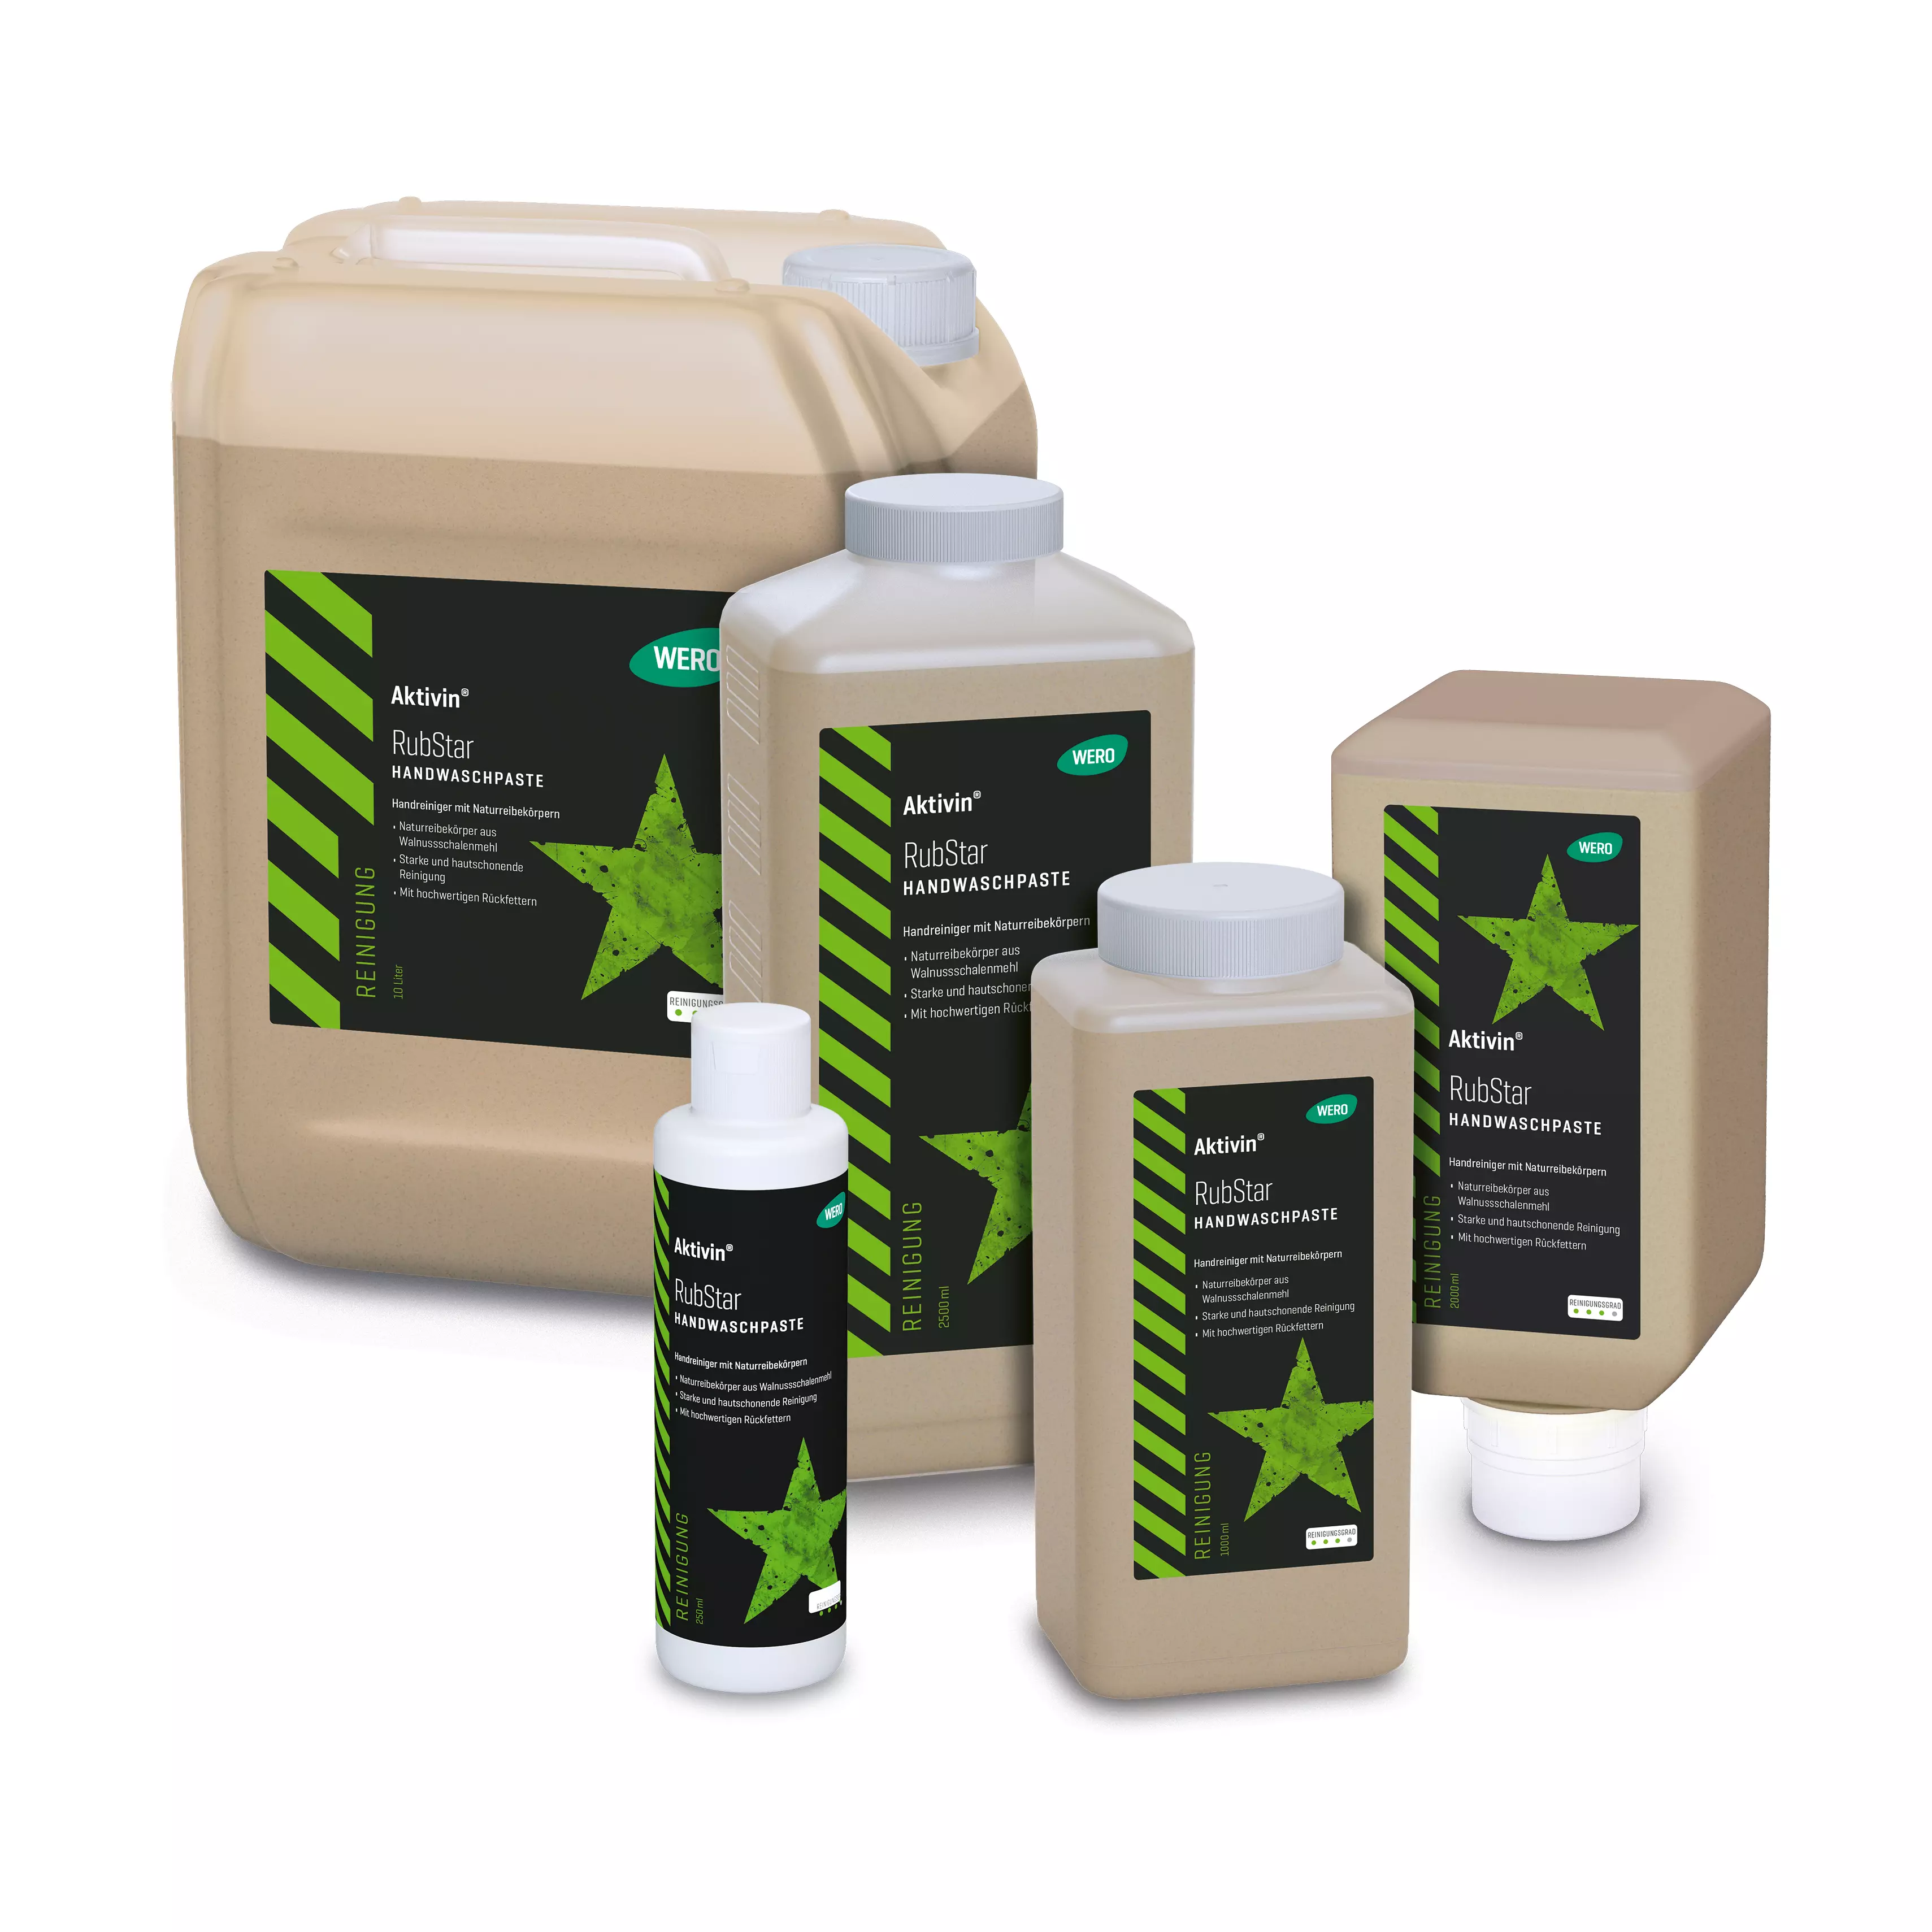 Skin cleansing Aktivin® RubStar - soft bottle, 2,000 ml